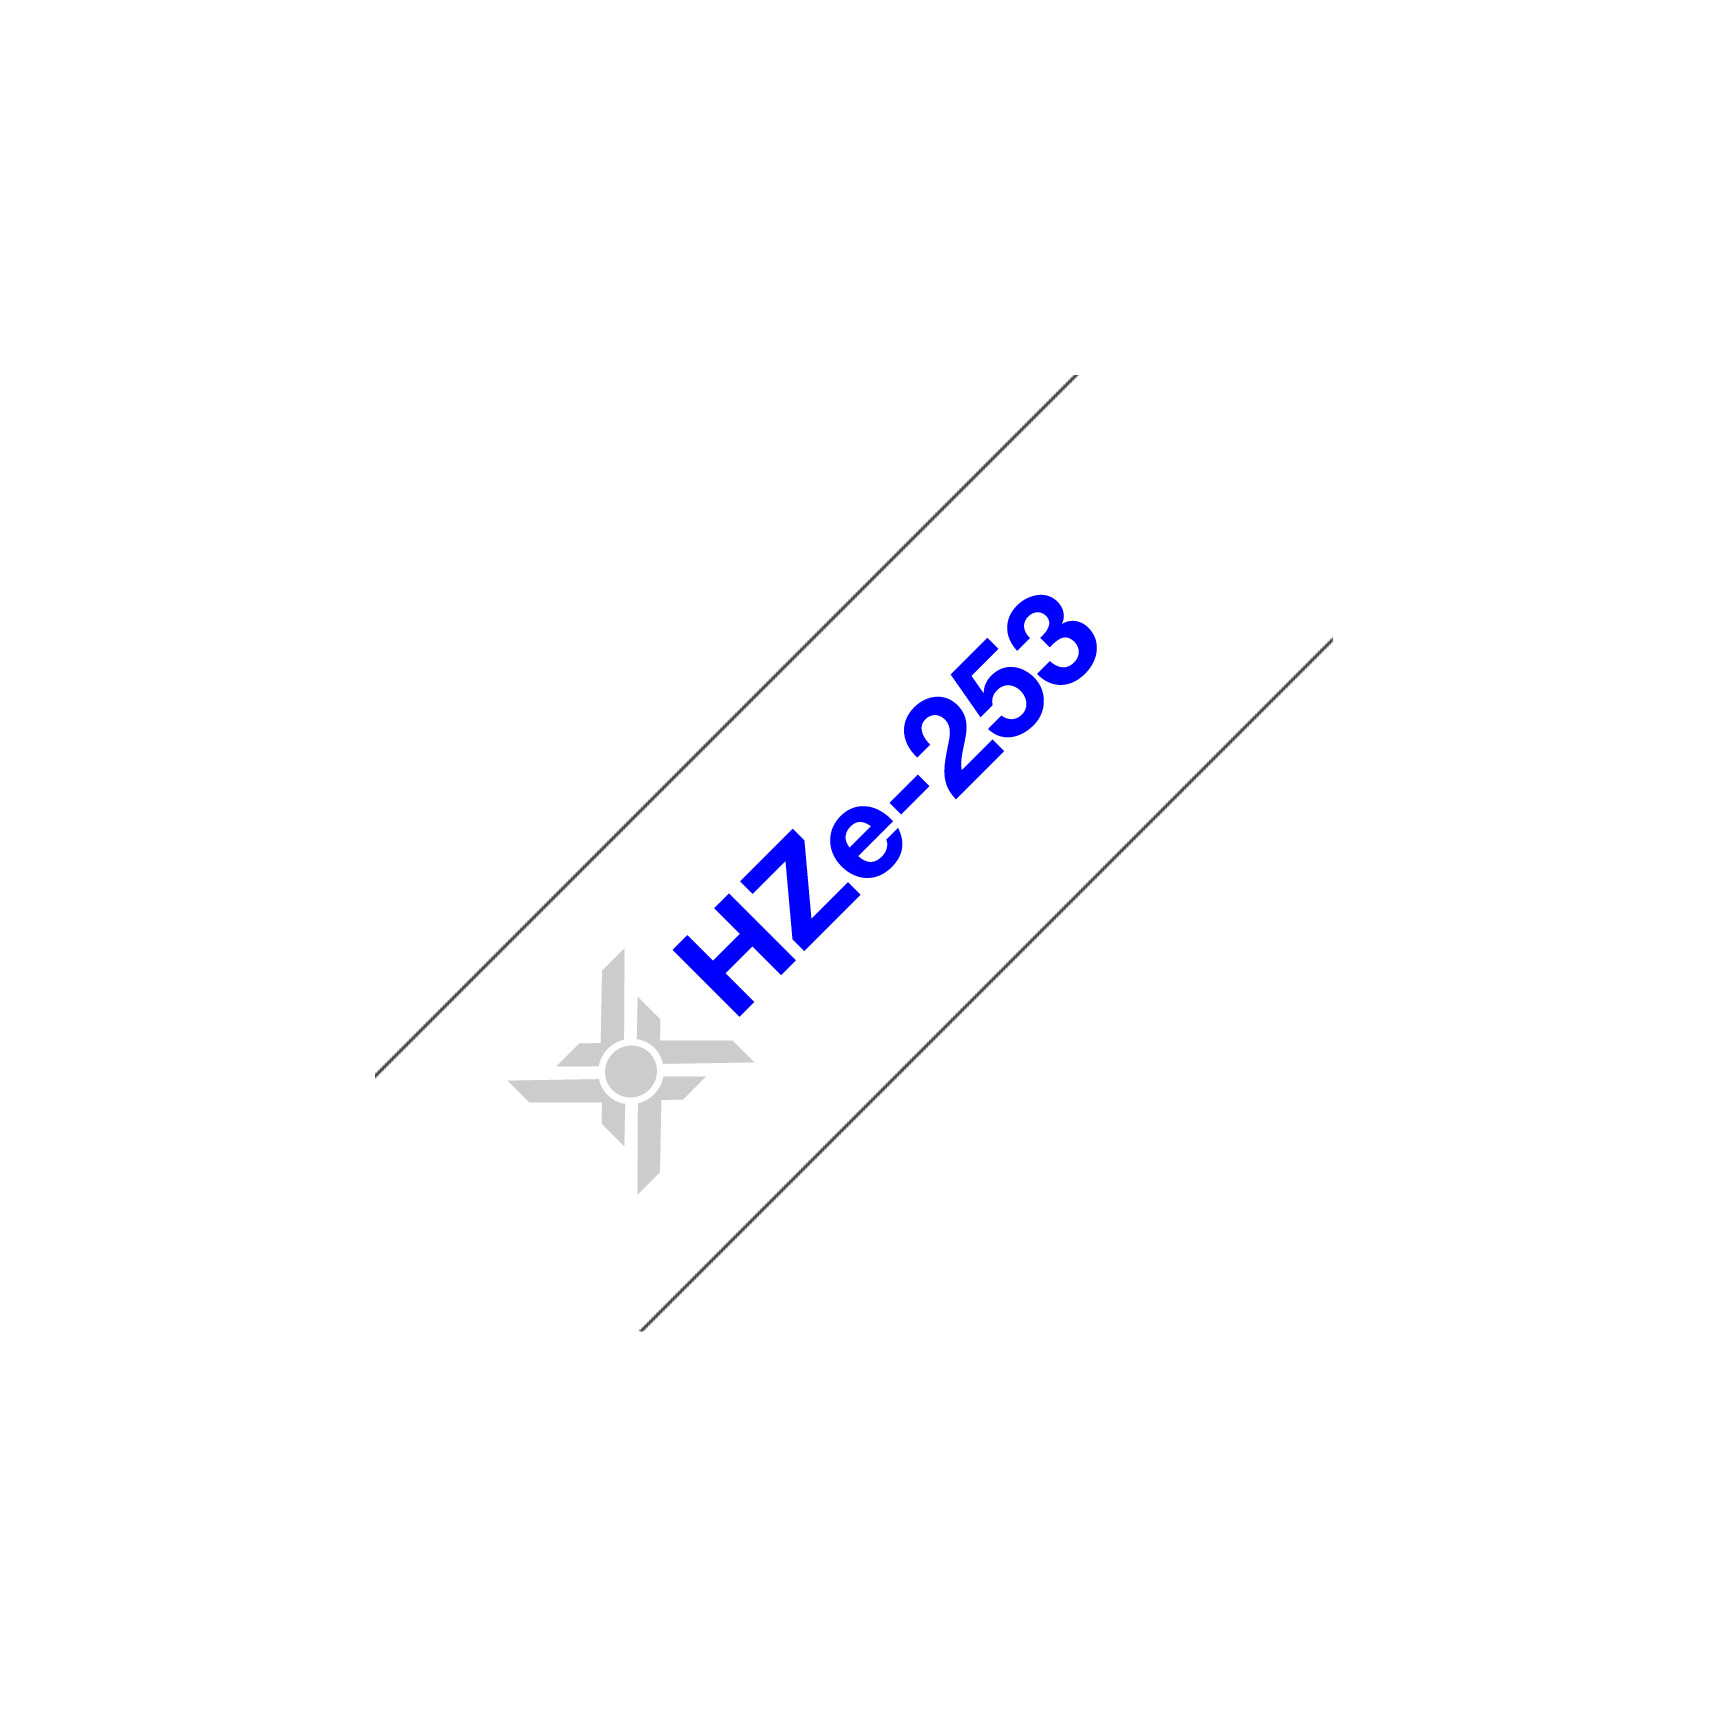 Nhãn in tiêu chuẩn Hze-253, khổ rộng 24mm, chữ xanh nền trắng (Blue on White), bám dính cao, chống thấm nước